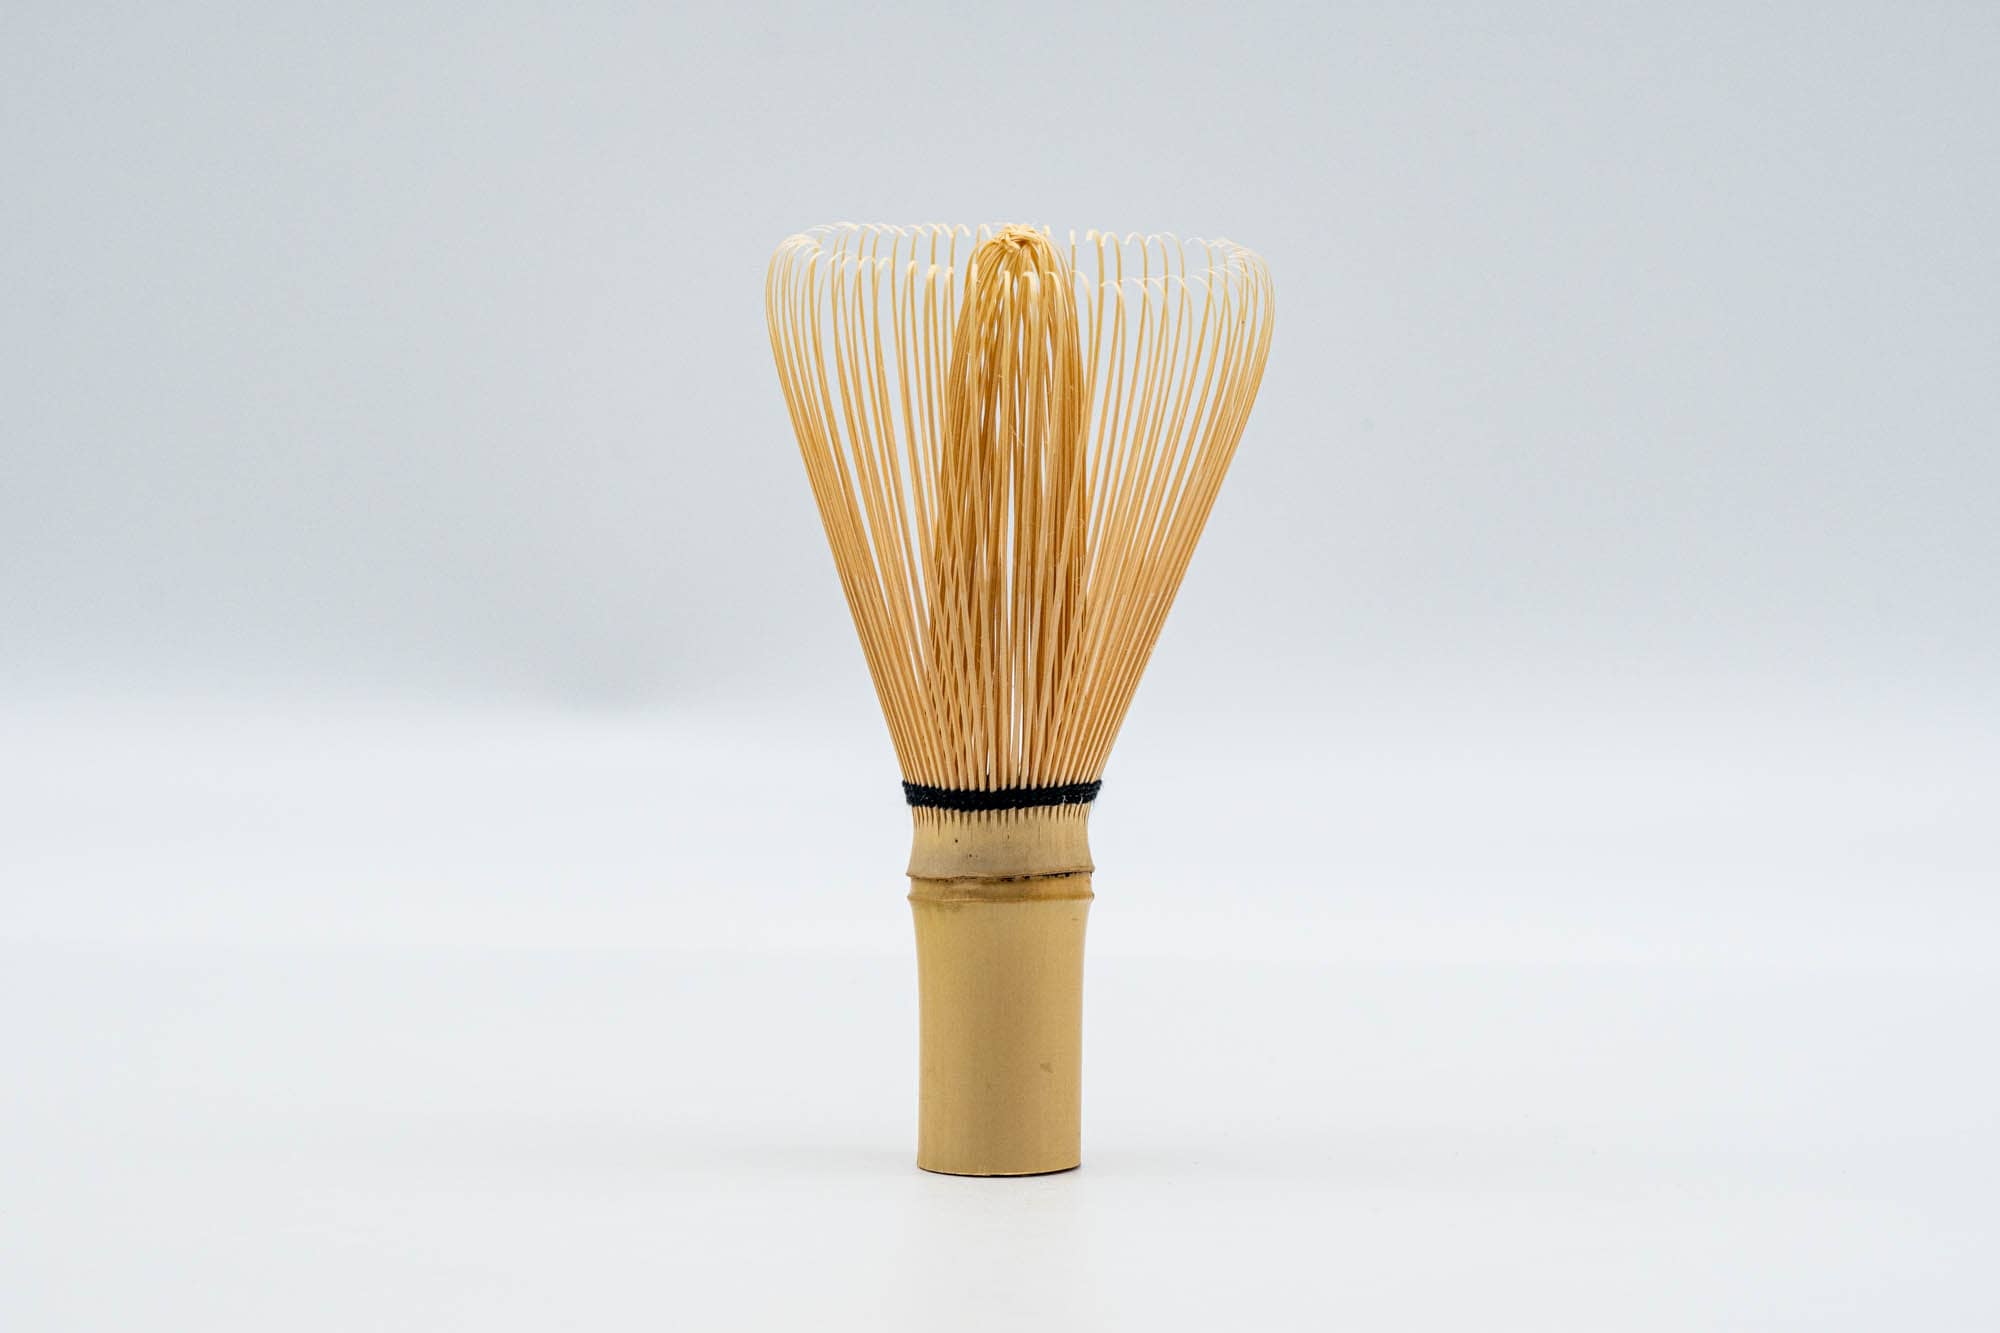 Japanese Kazuho Bamboo Matcha Whisk – Matchaful